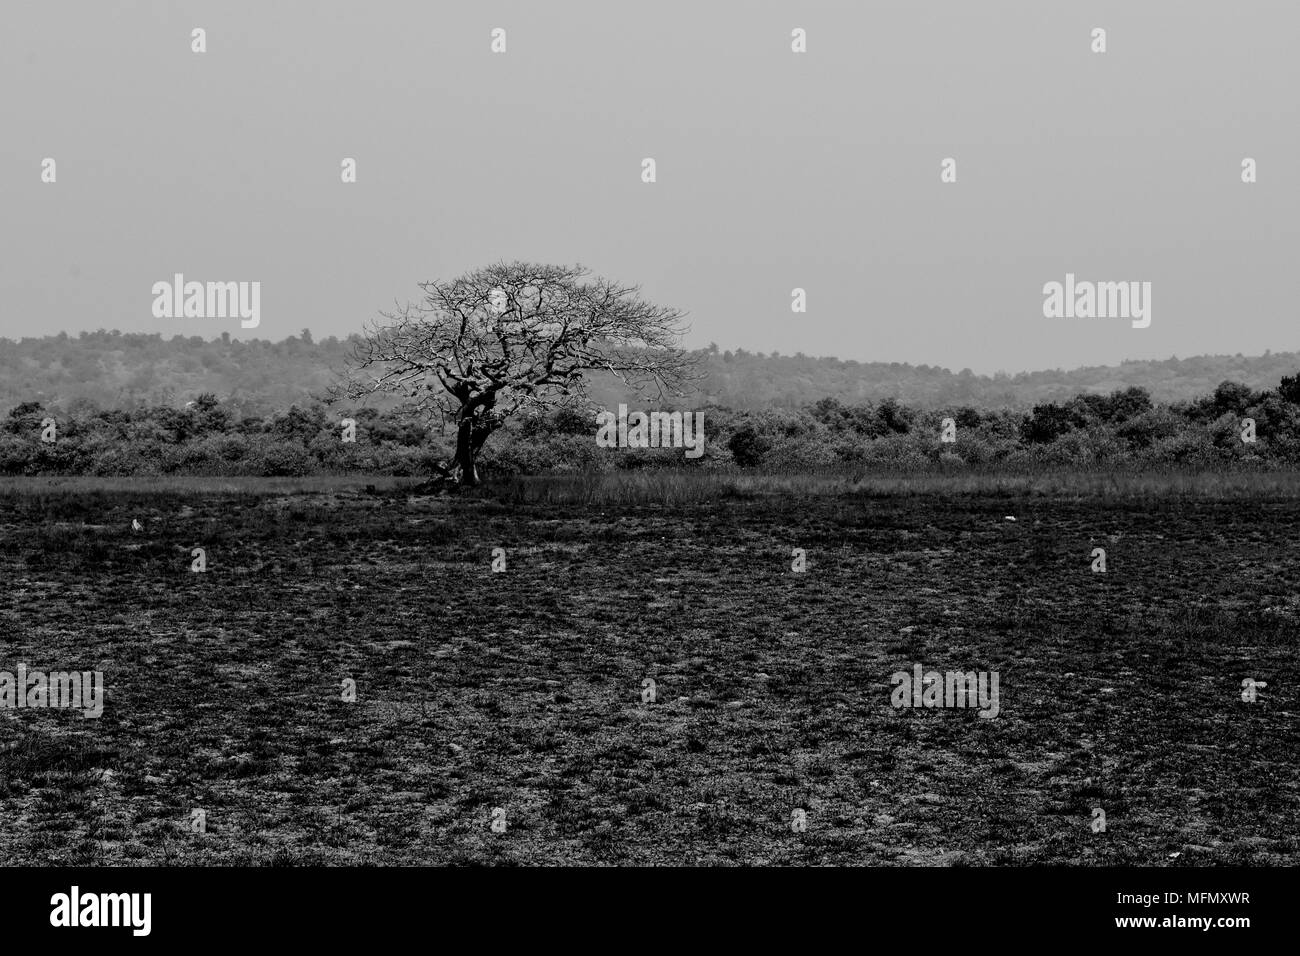 Un endroit sec, aride et paysage sauvage avec un seul arbre en monochrome. Banque D'Images